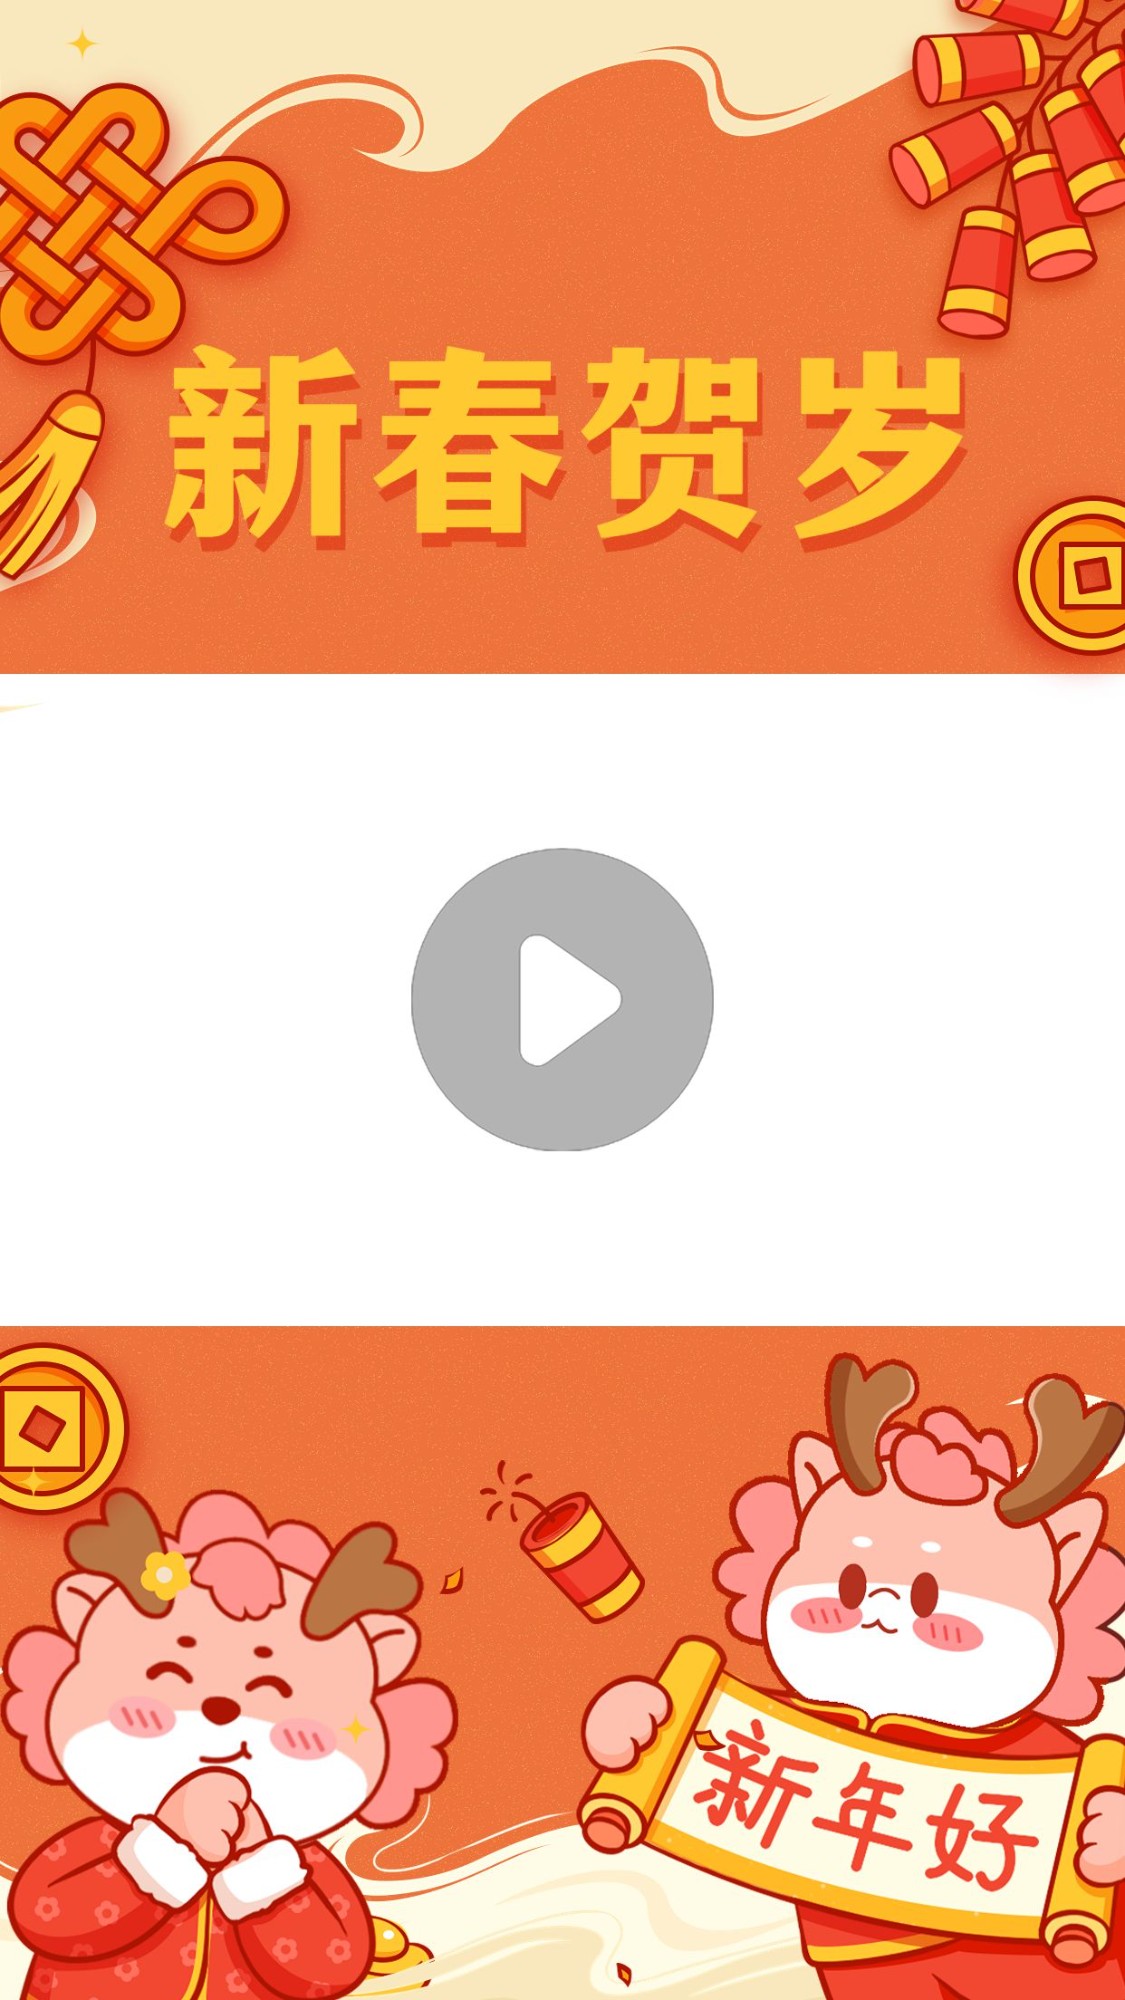 教育培训龙年大吉春节祝福视频边框预览效果